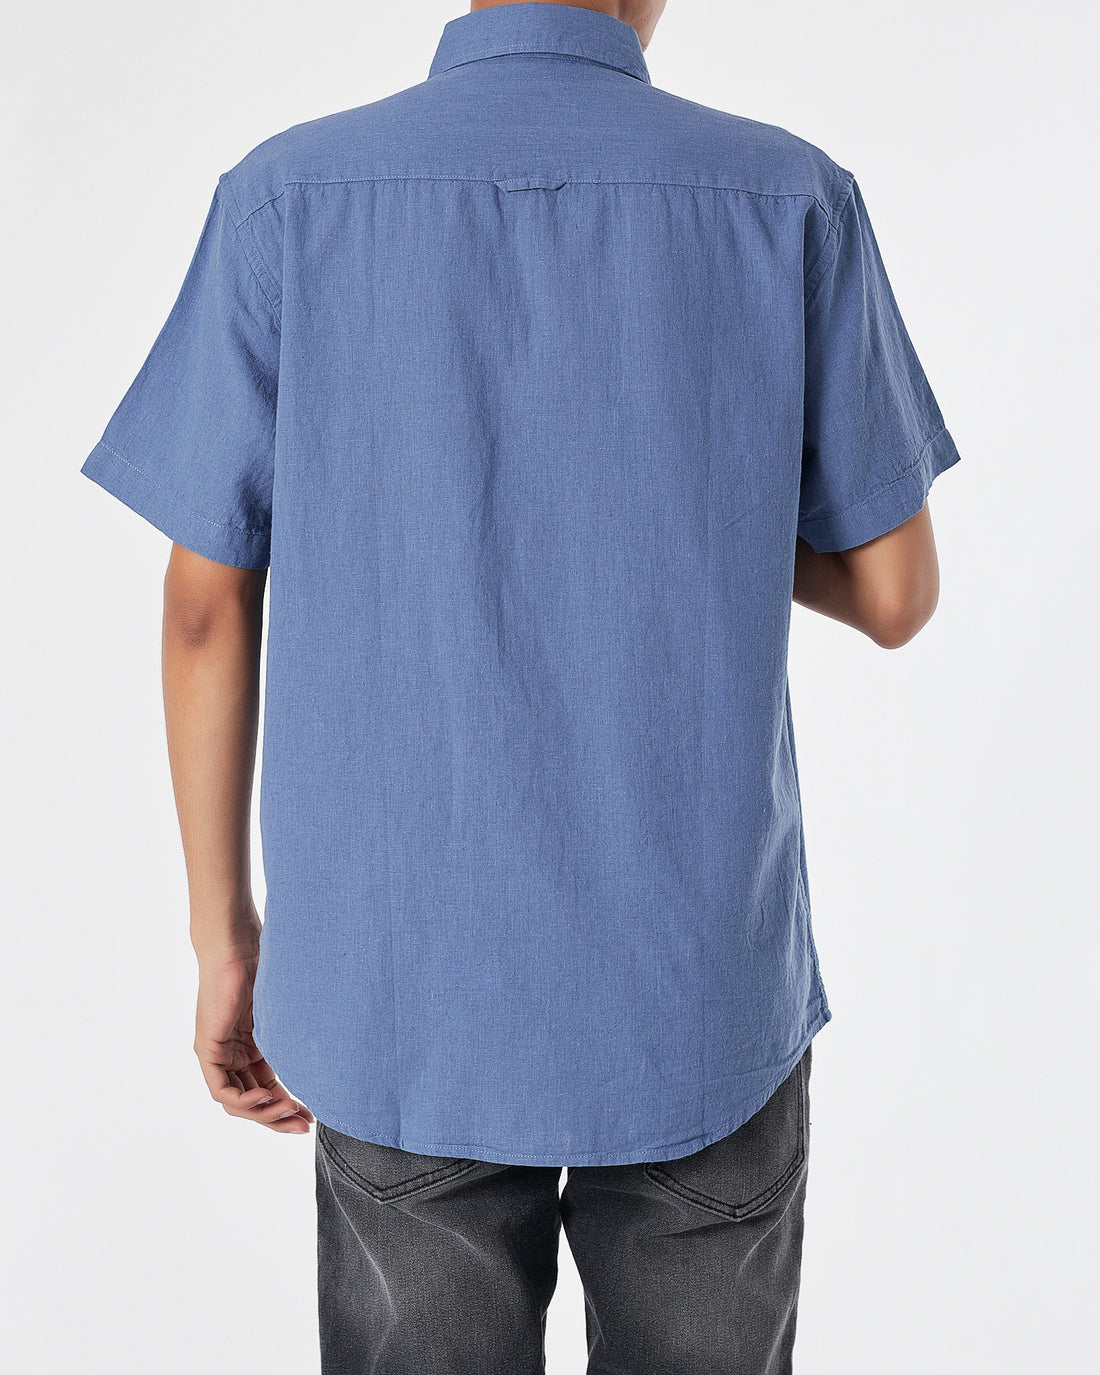 RL Casual Linen Men Blue Shirts Short Sleeve 20.90